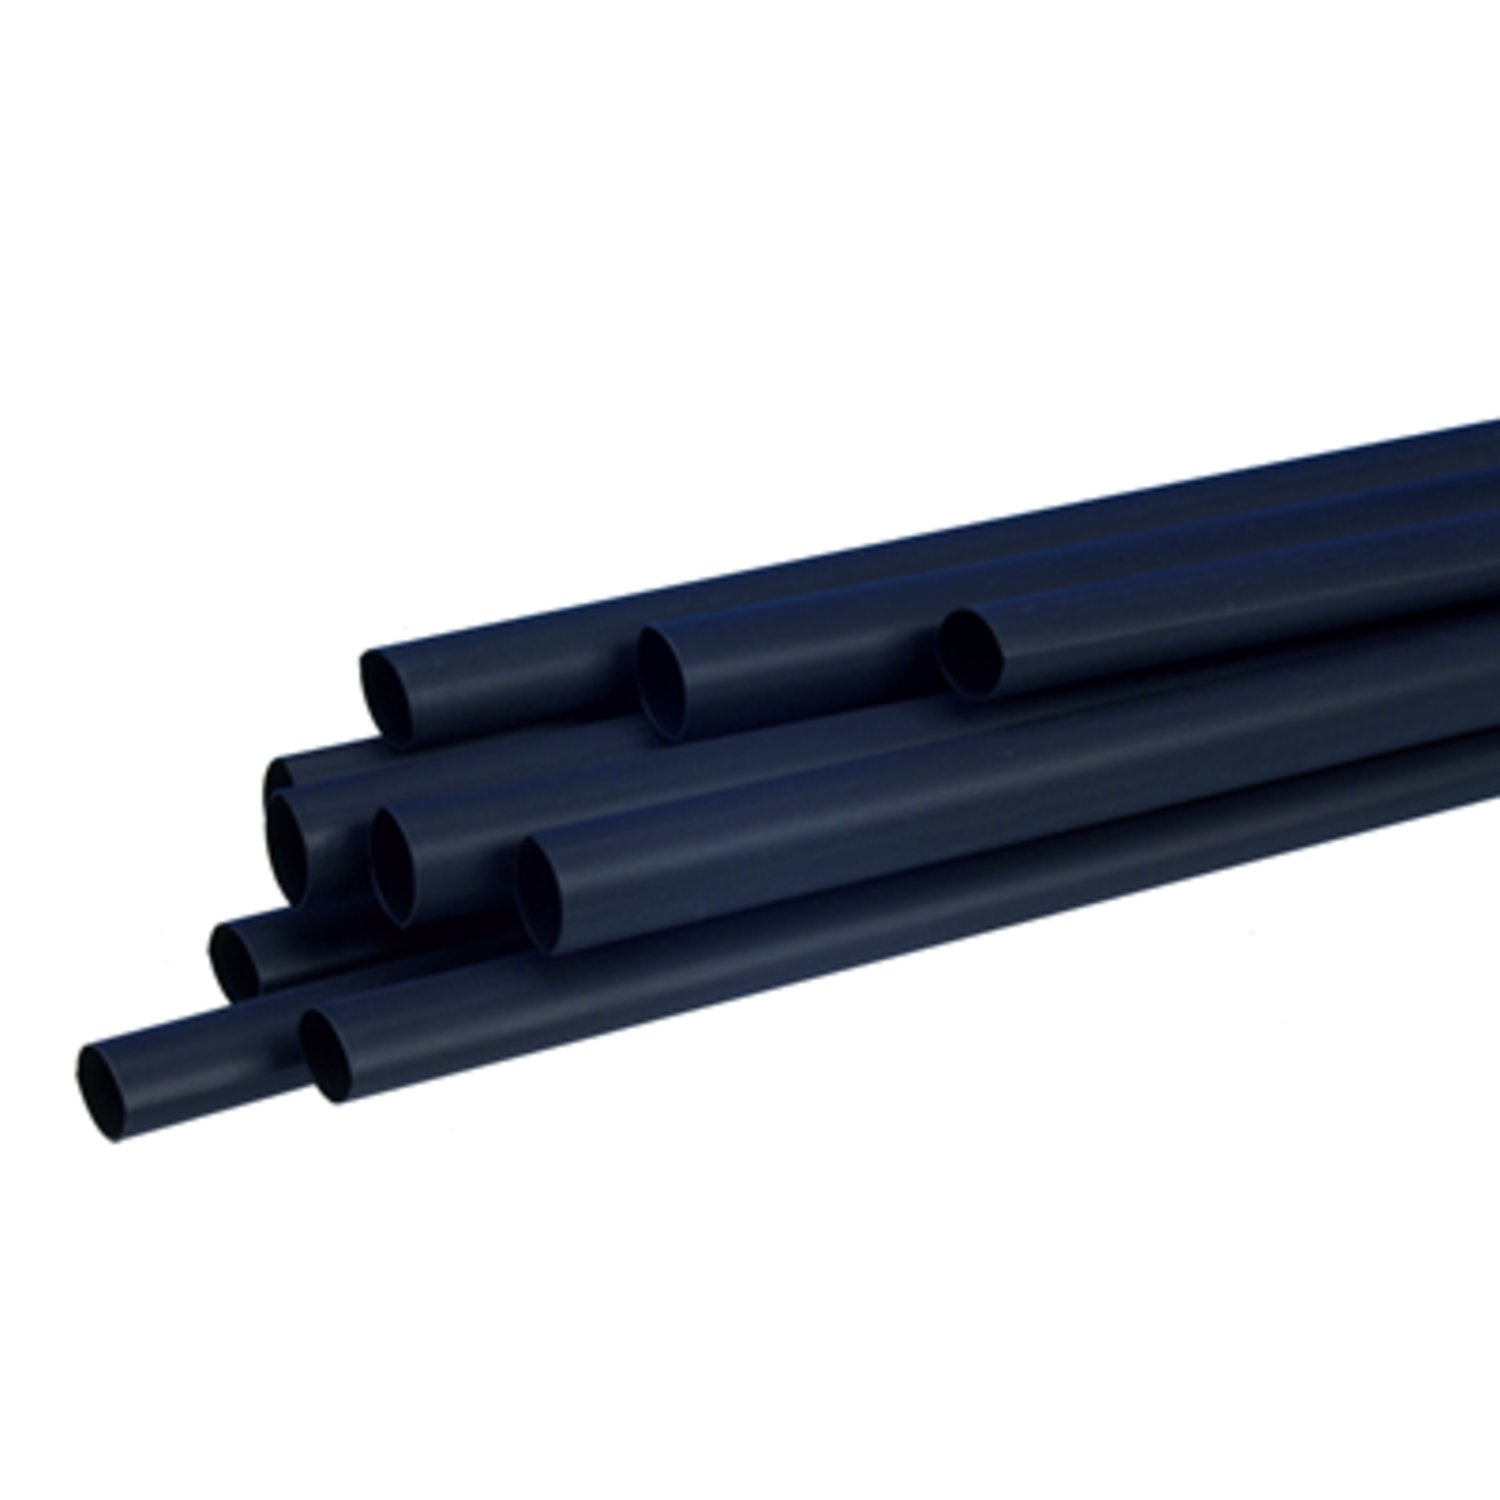 7100025130 - 3M SFTW-203 1/16" Heat Shrink Tubing Polyolefin, Black, 1.5/0.5 mm, 305
m Roll